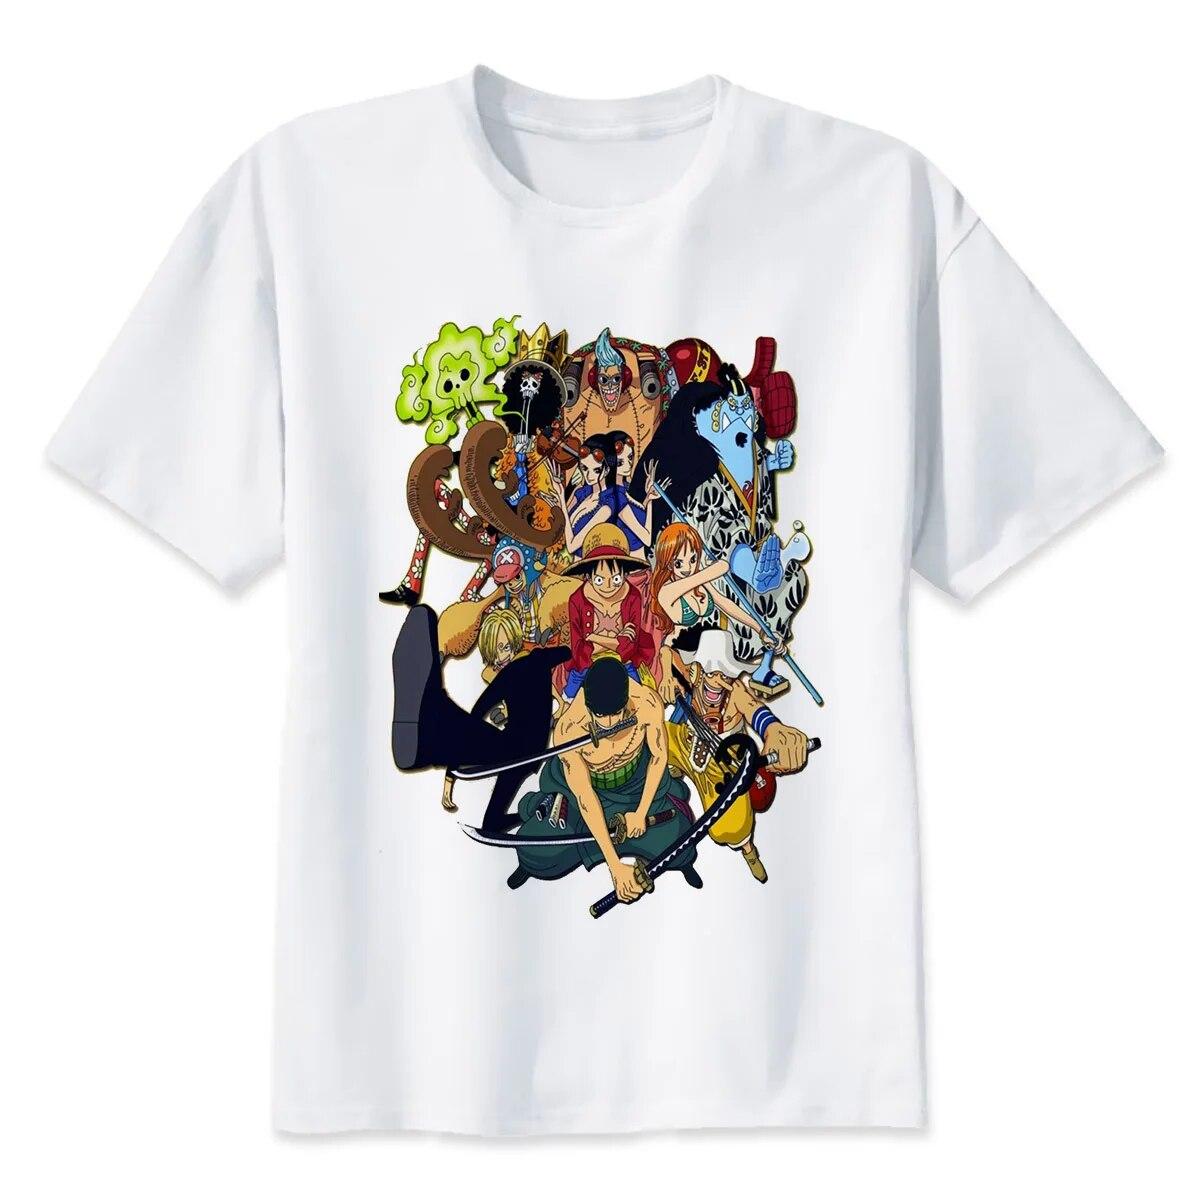 YSM Cotton Tshirt One Piece T-shirt men fashion summer short men Tshirt brand clothing comfortable